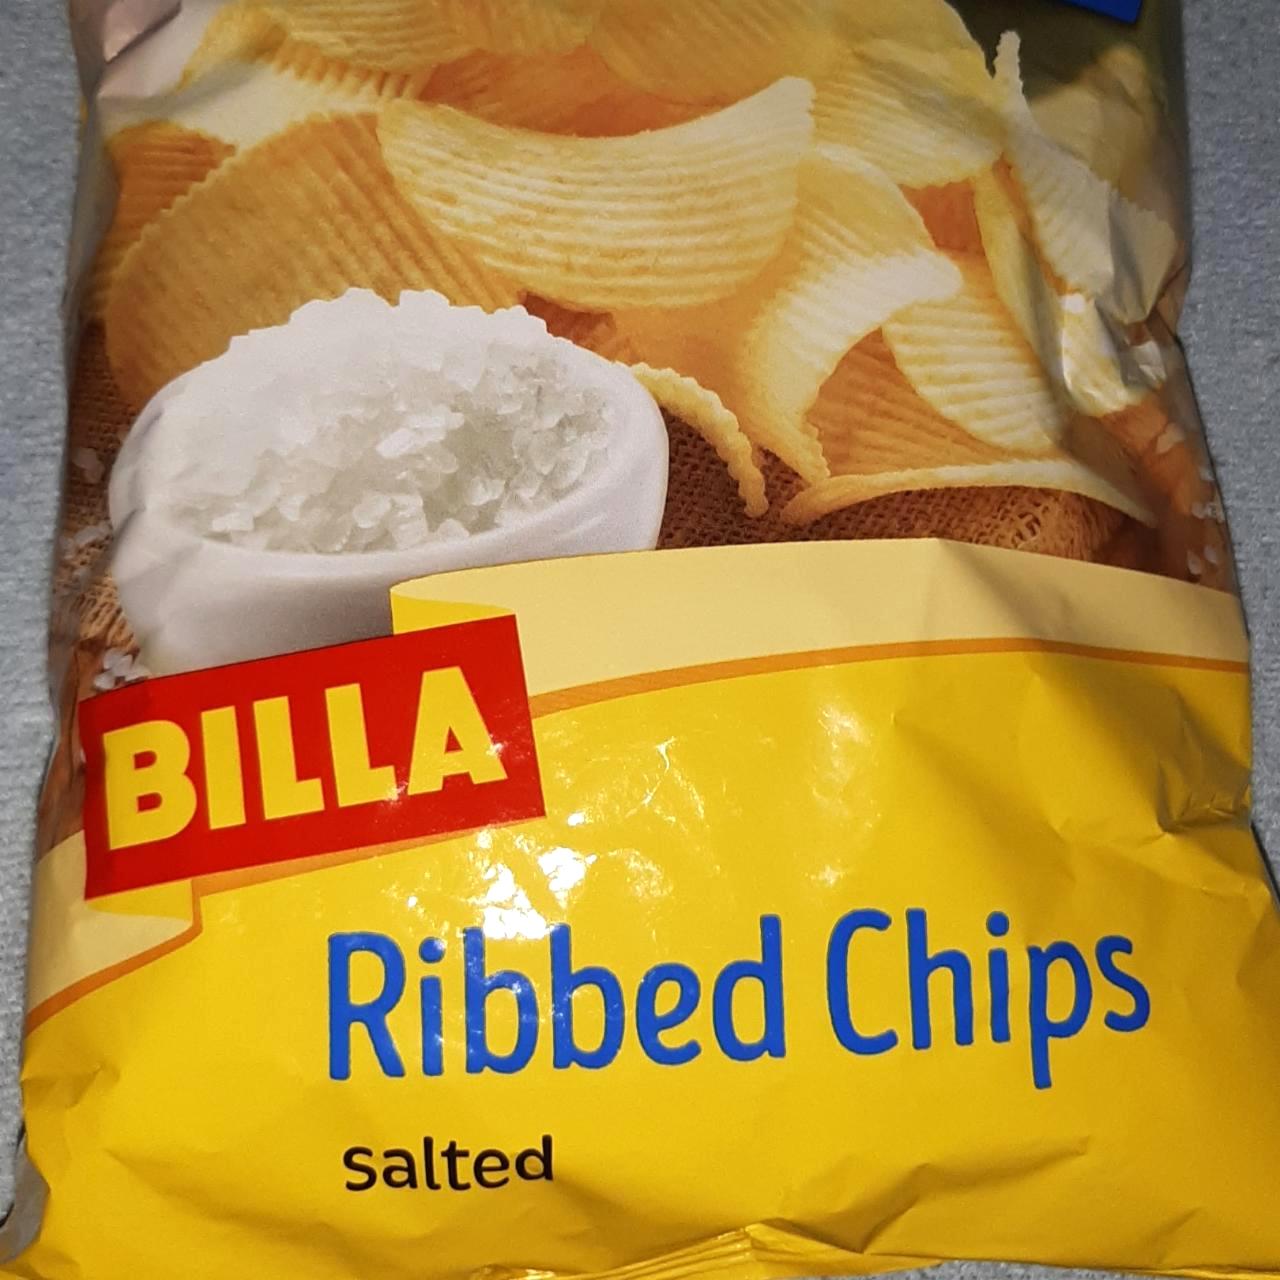 Képek - Ribbed chips salted Billa